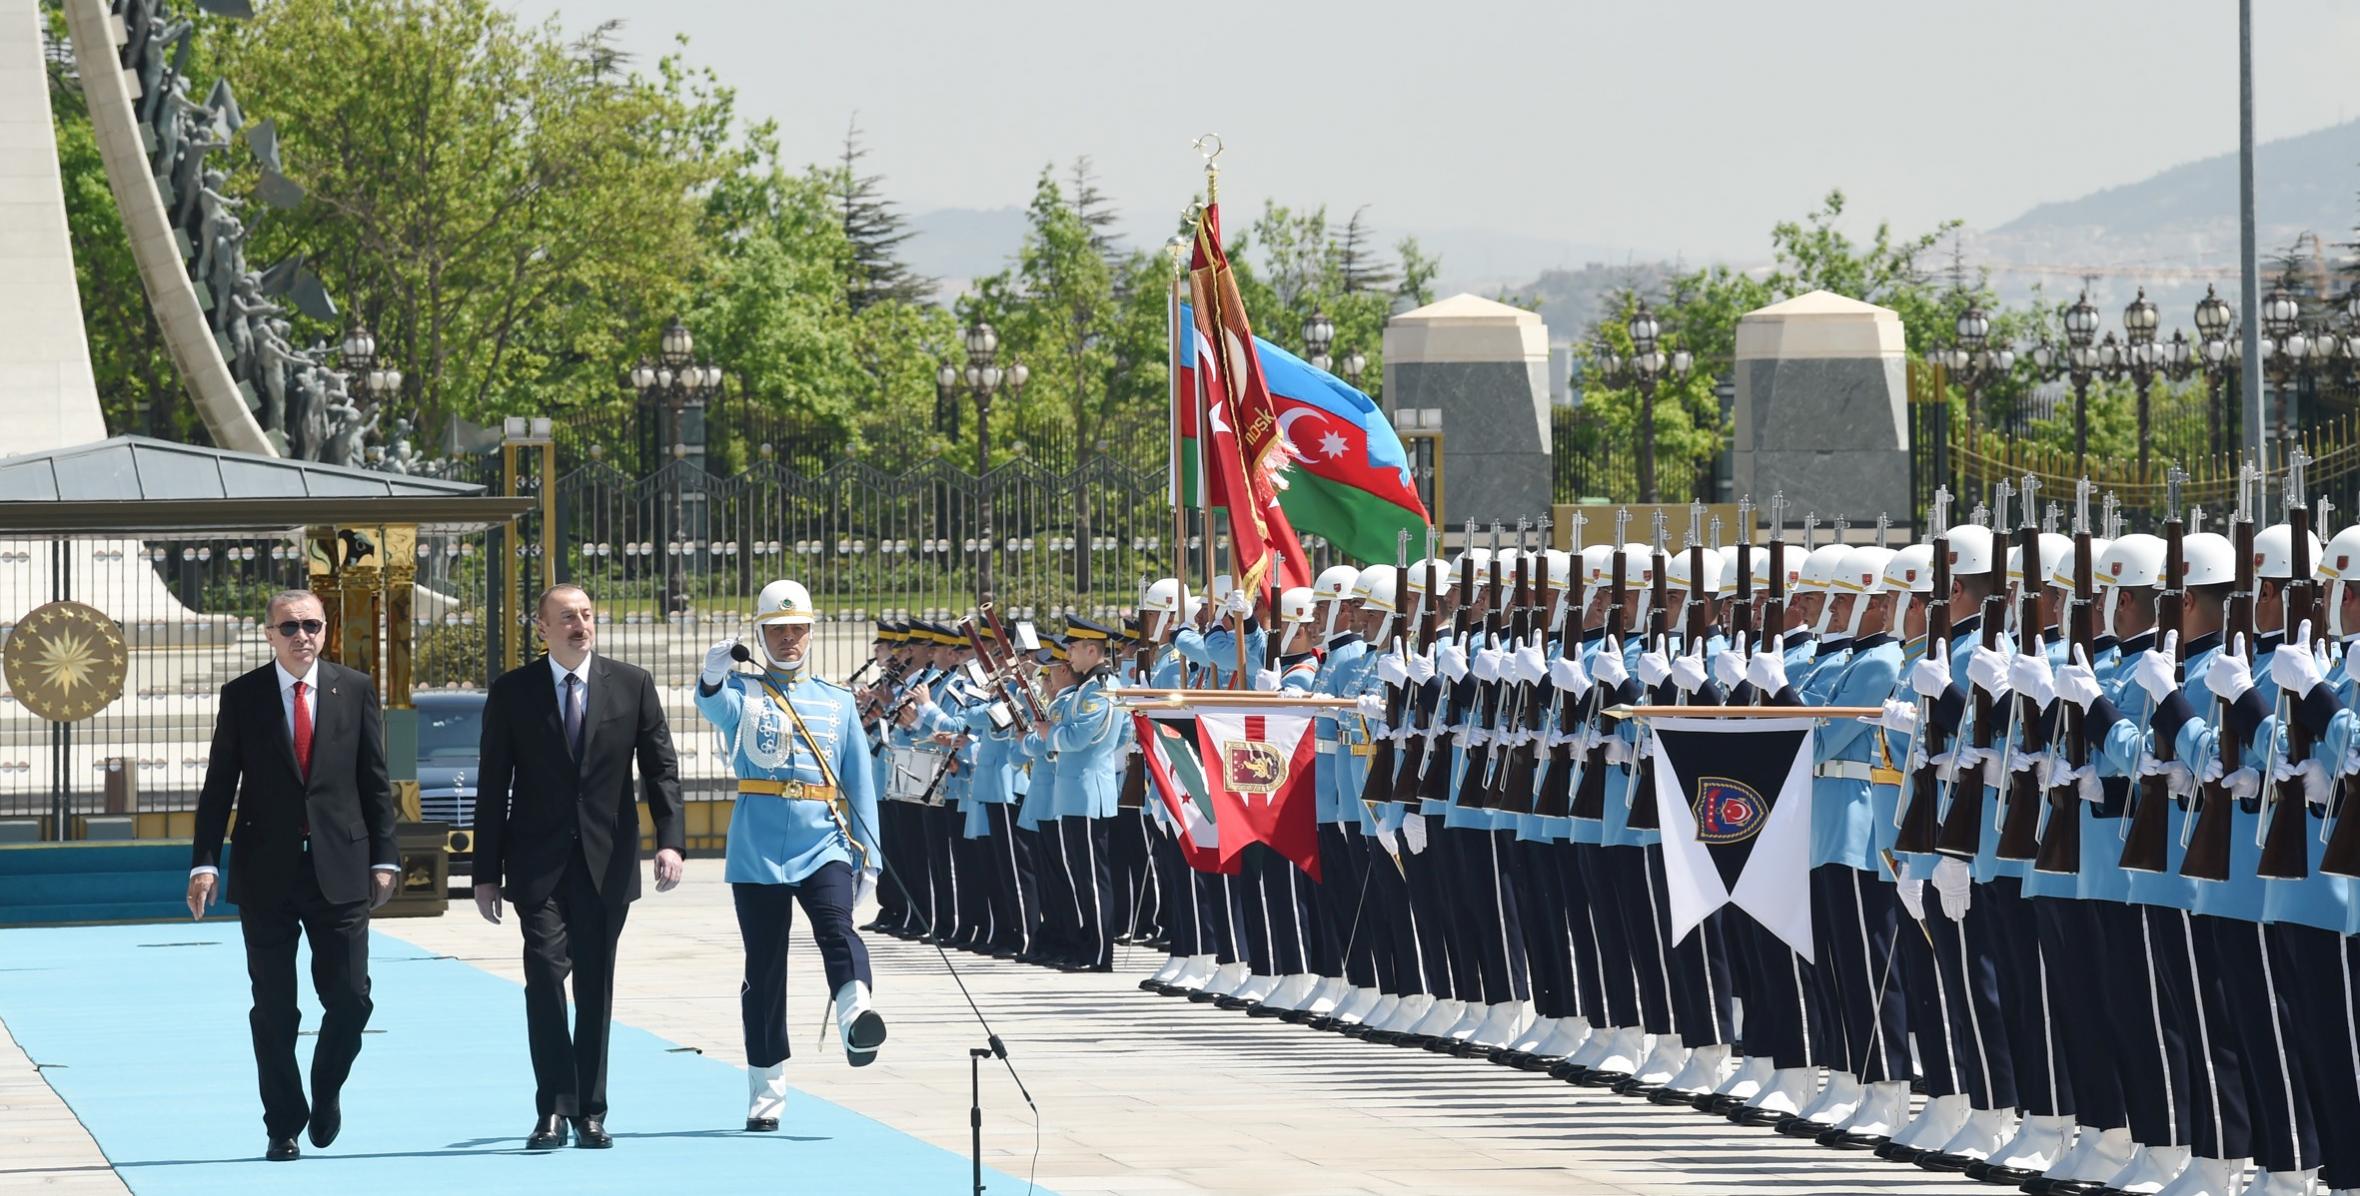 В Анкаре состоялась церемония официальной встречи Ильхама Алиева